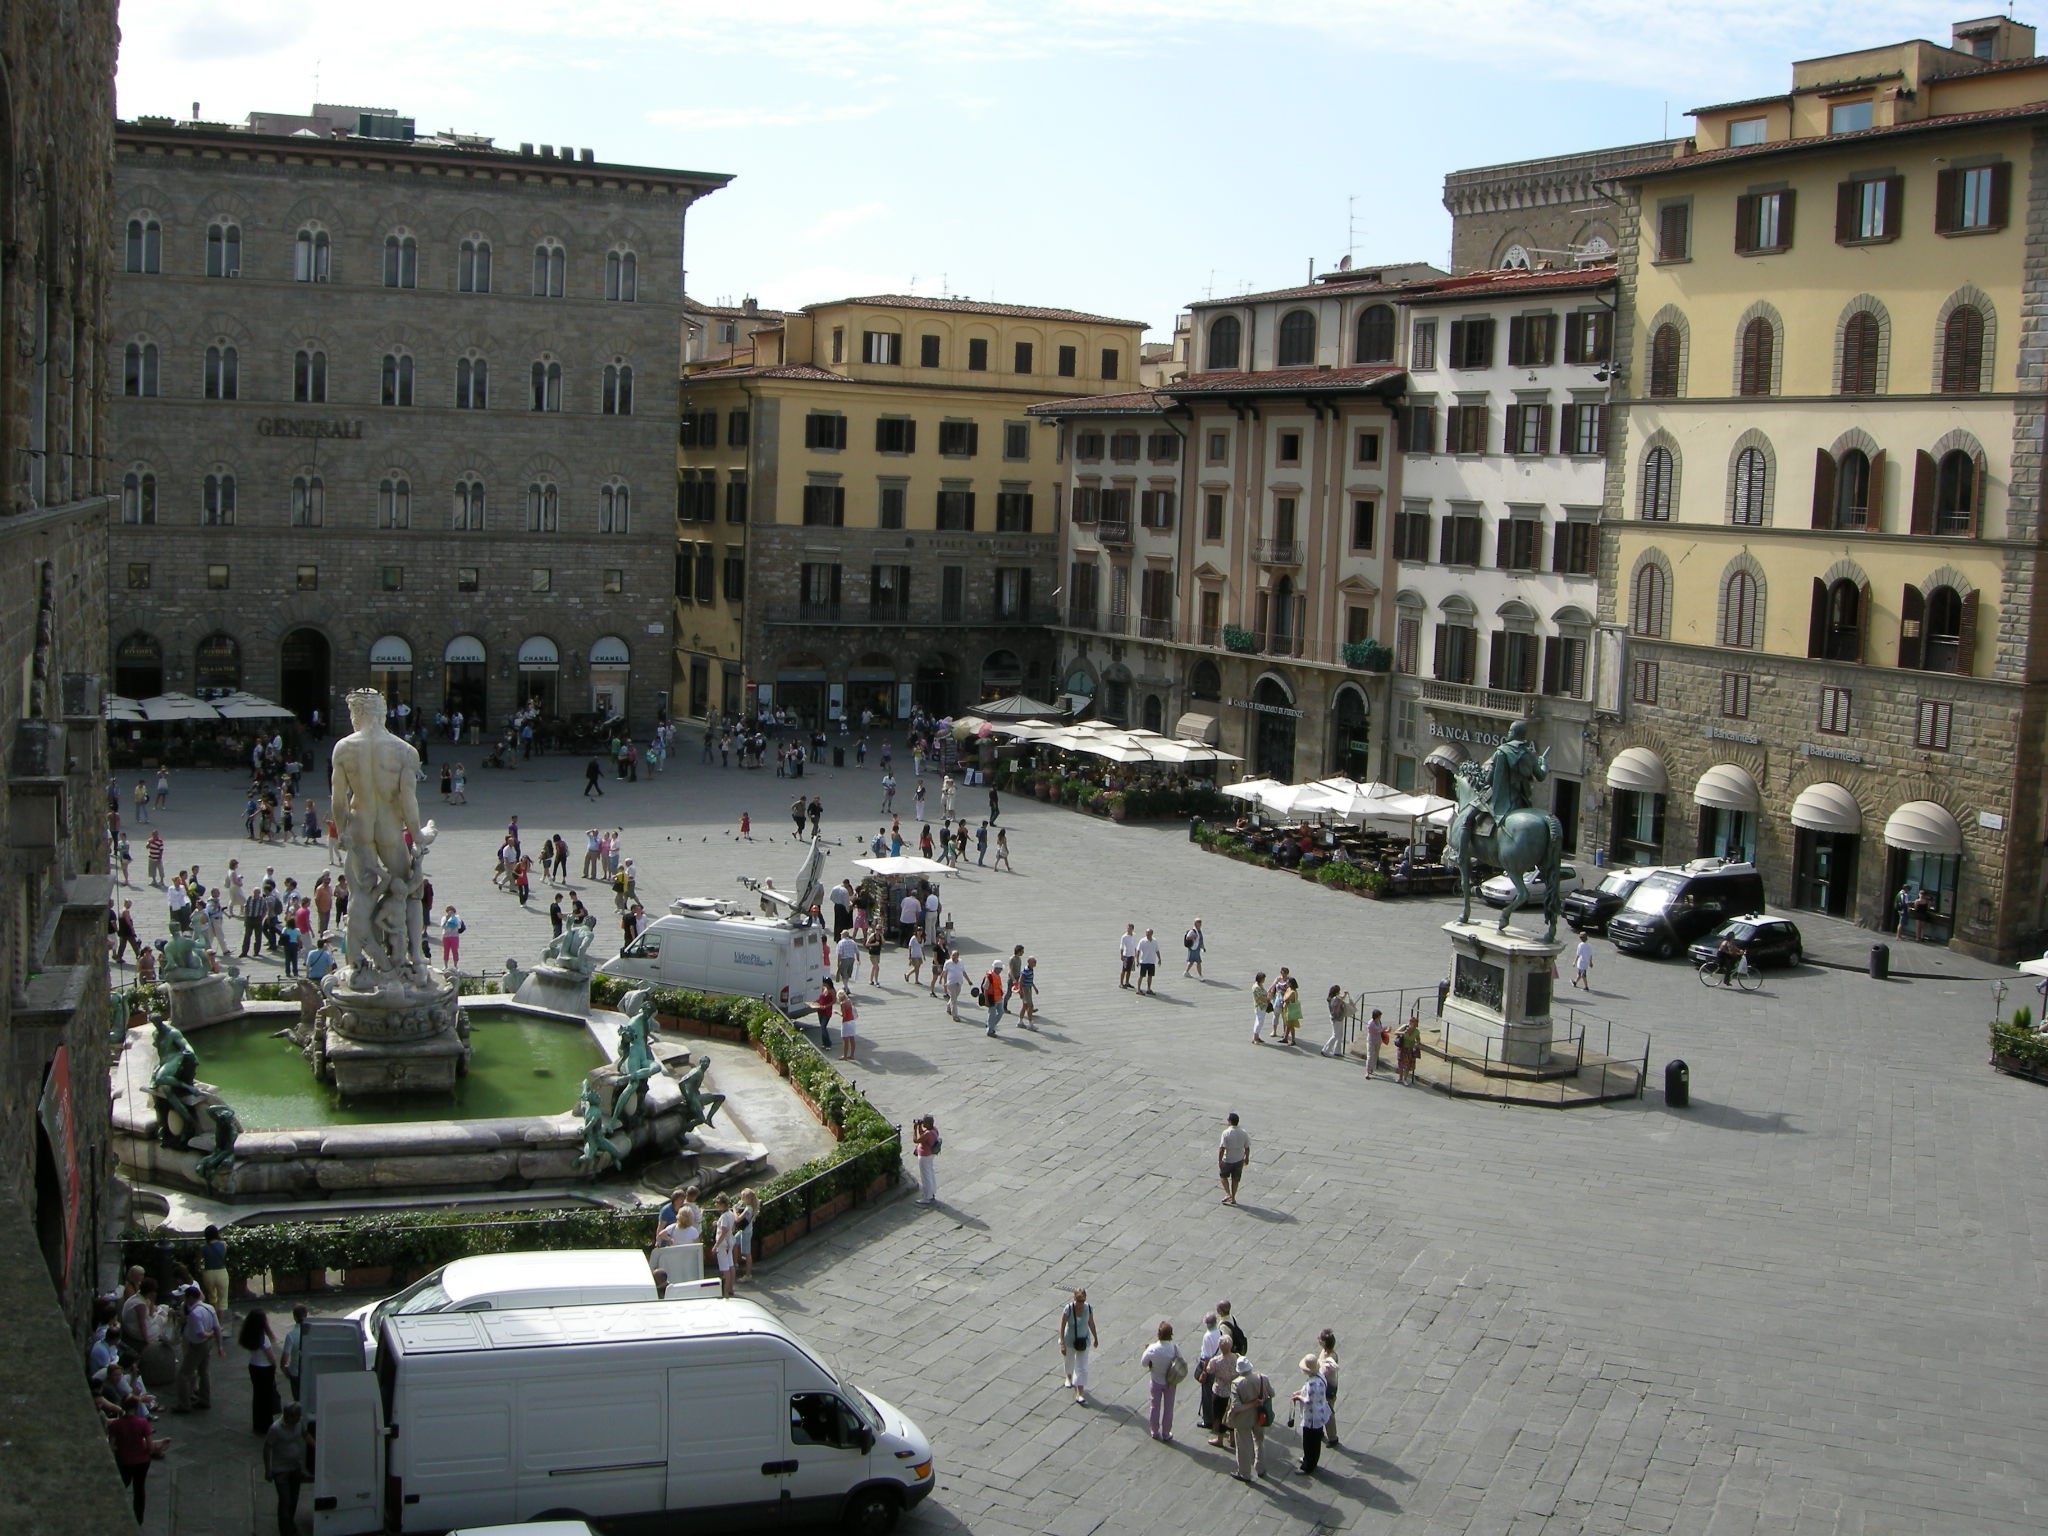 Piazza della Signoria, Florence